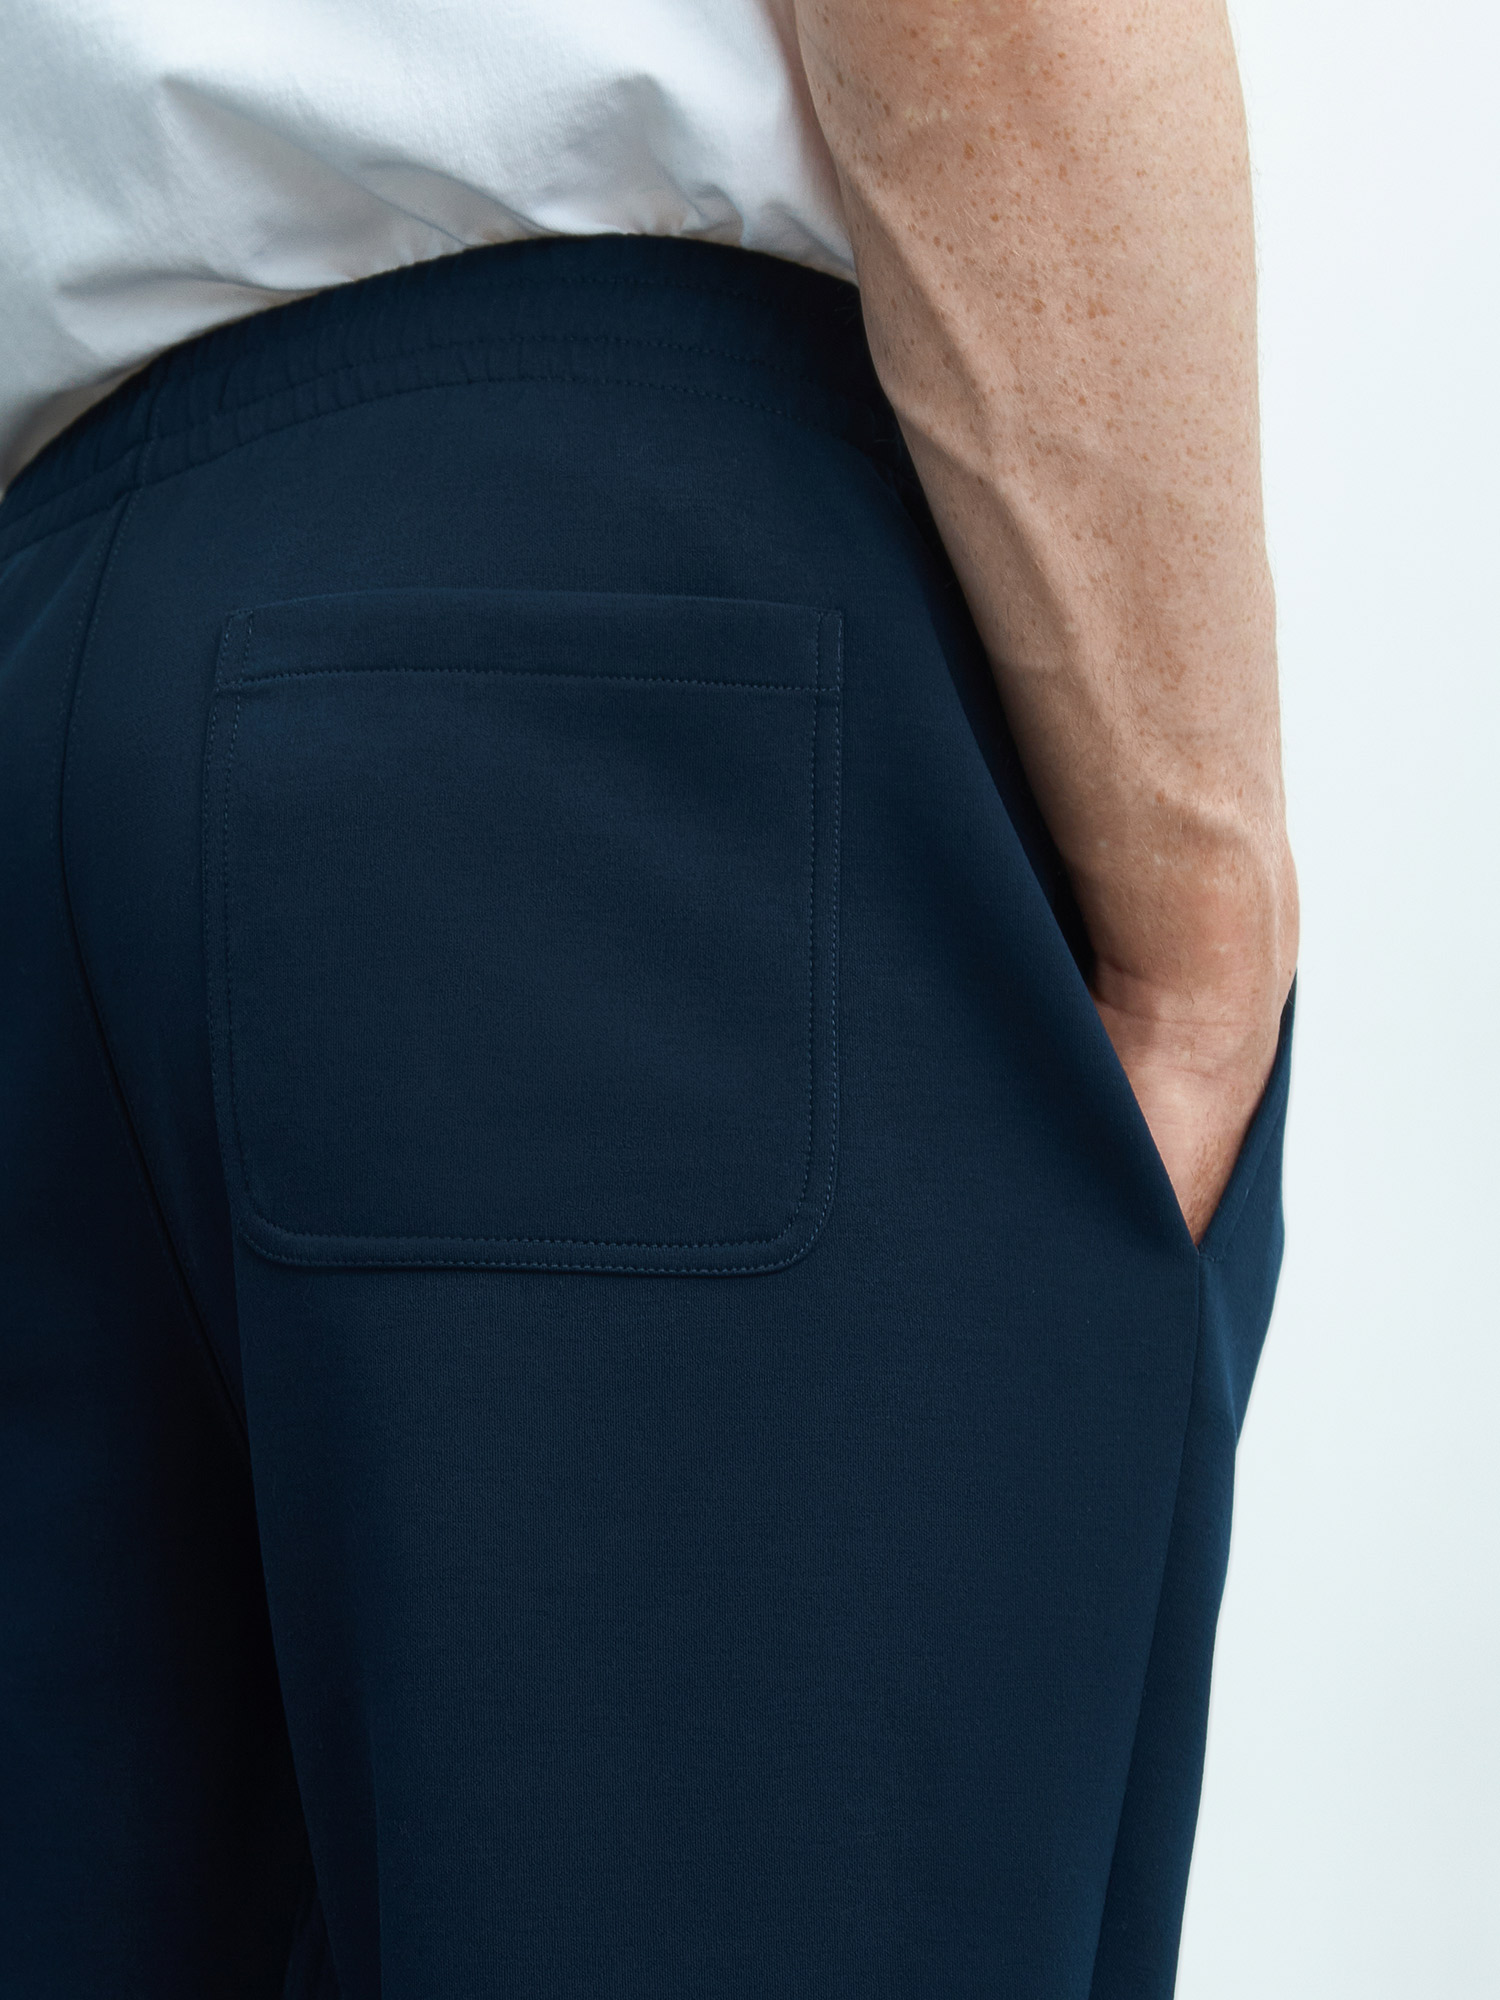 Мужские брюки из переработанного полиэстера. Изображение 5